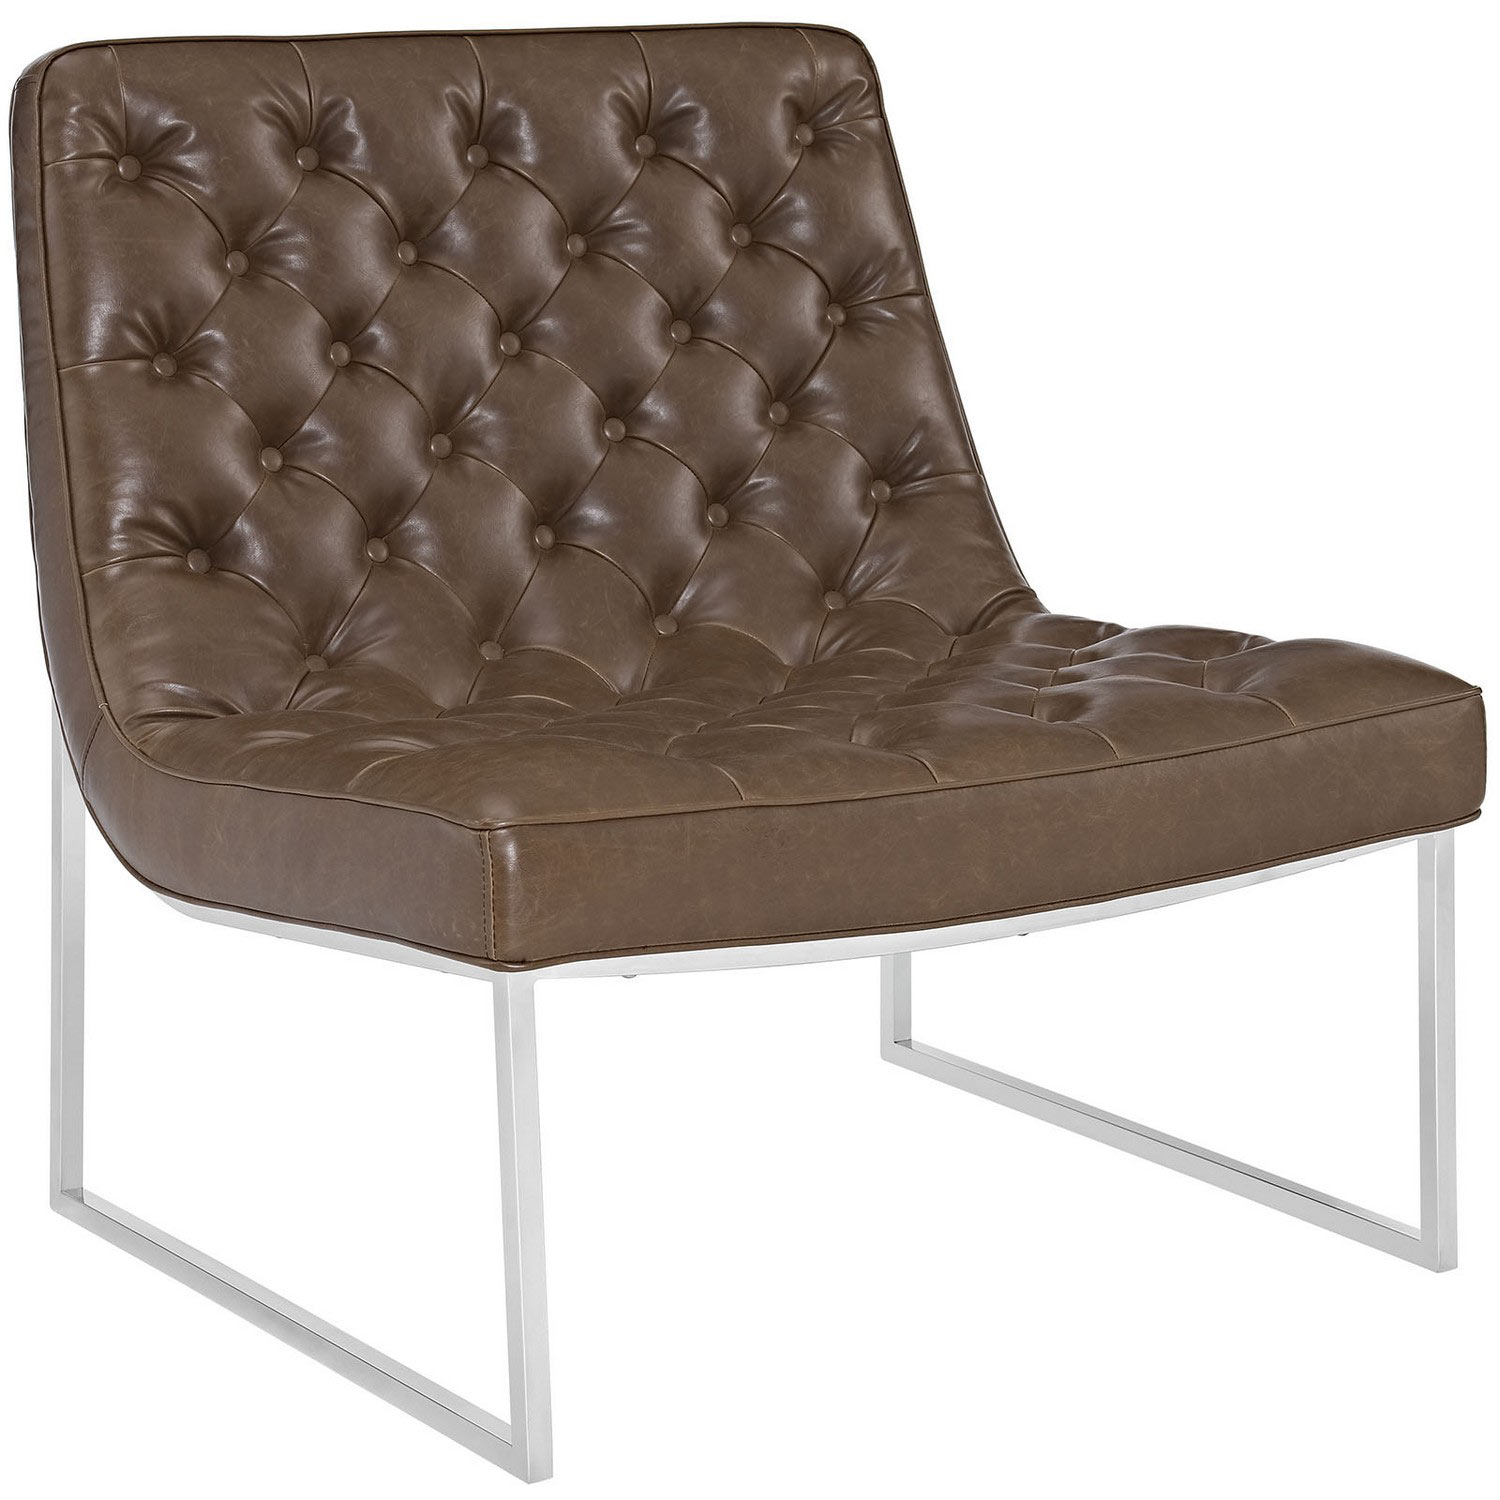 Modway Ibiza Memory Foam Lounge Chair - Brown